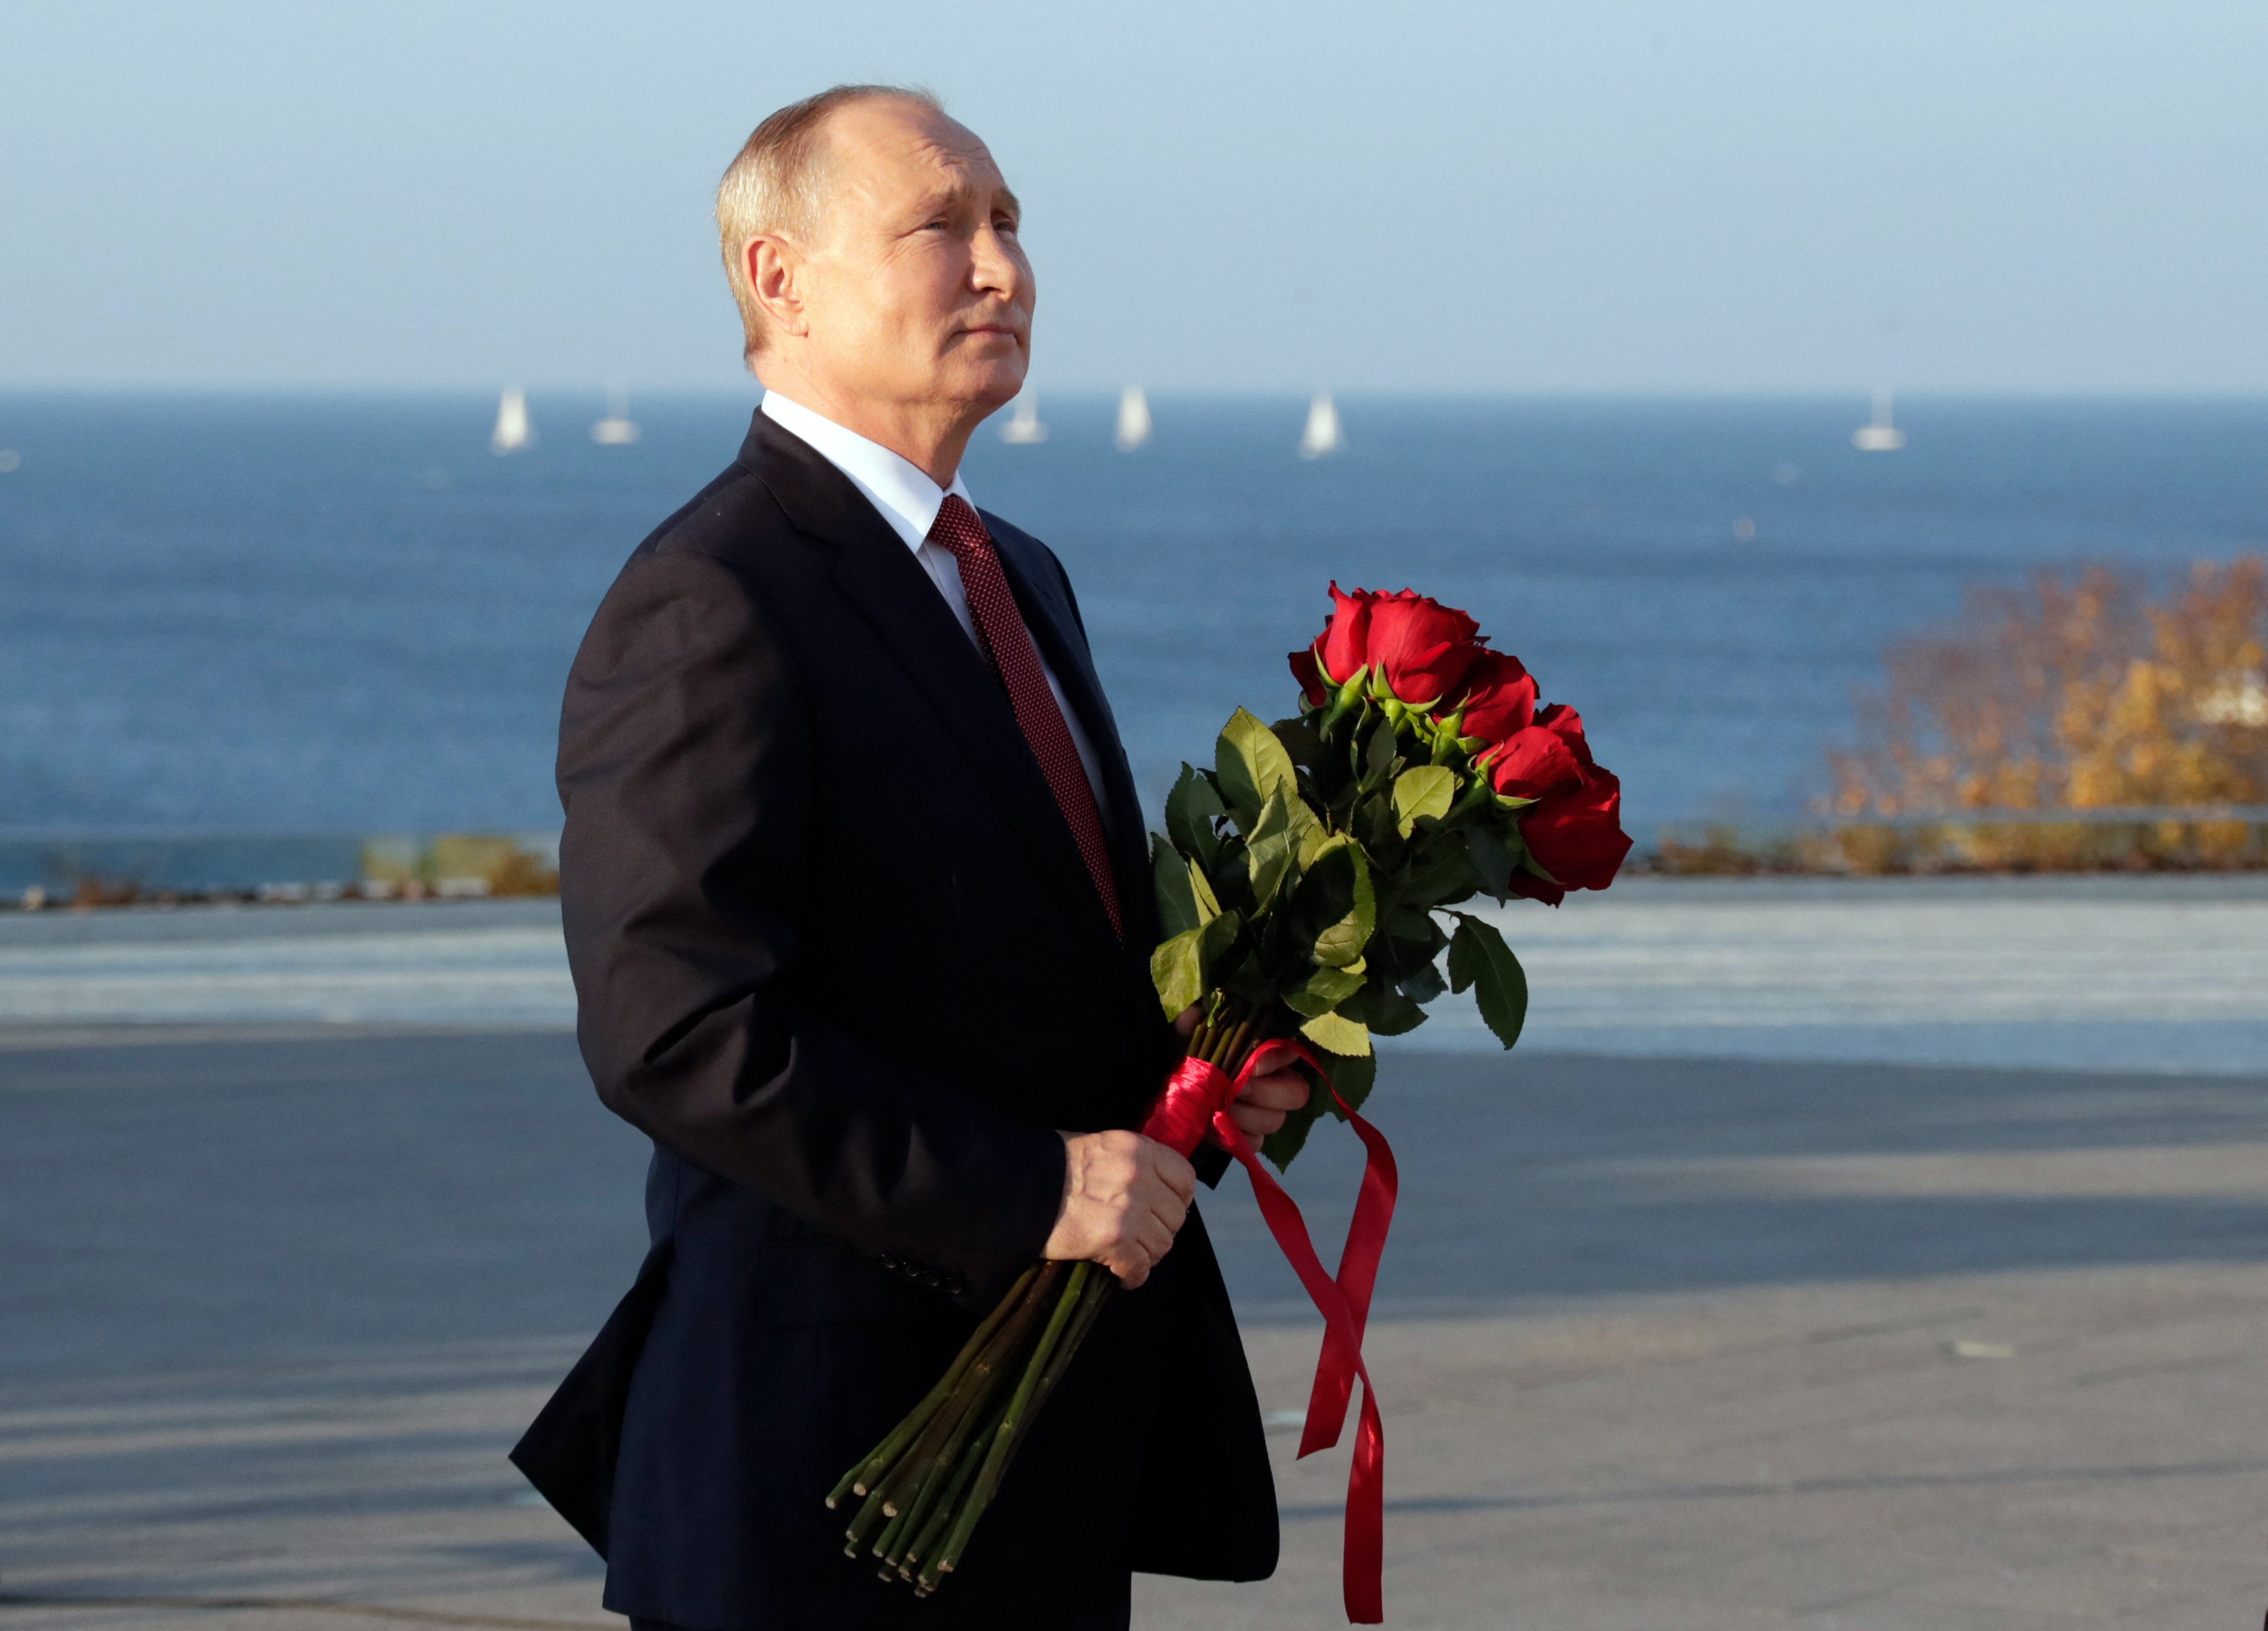 Lukasenka még jobban hozzáköti Fehéroroszországot Oroszországhoz